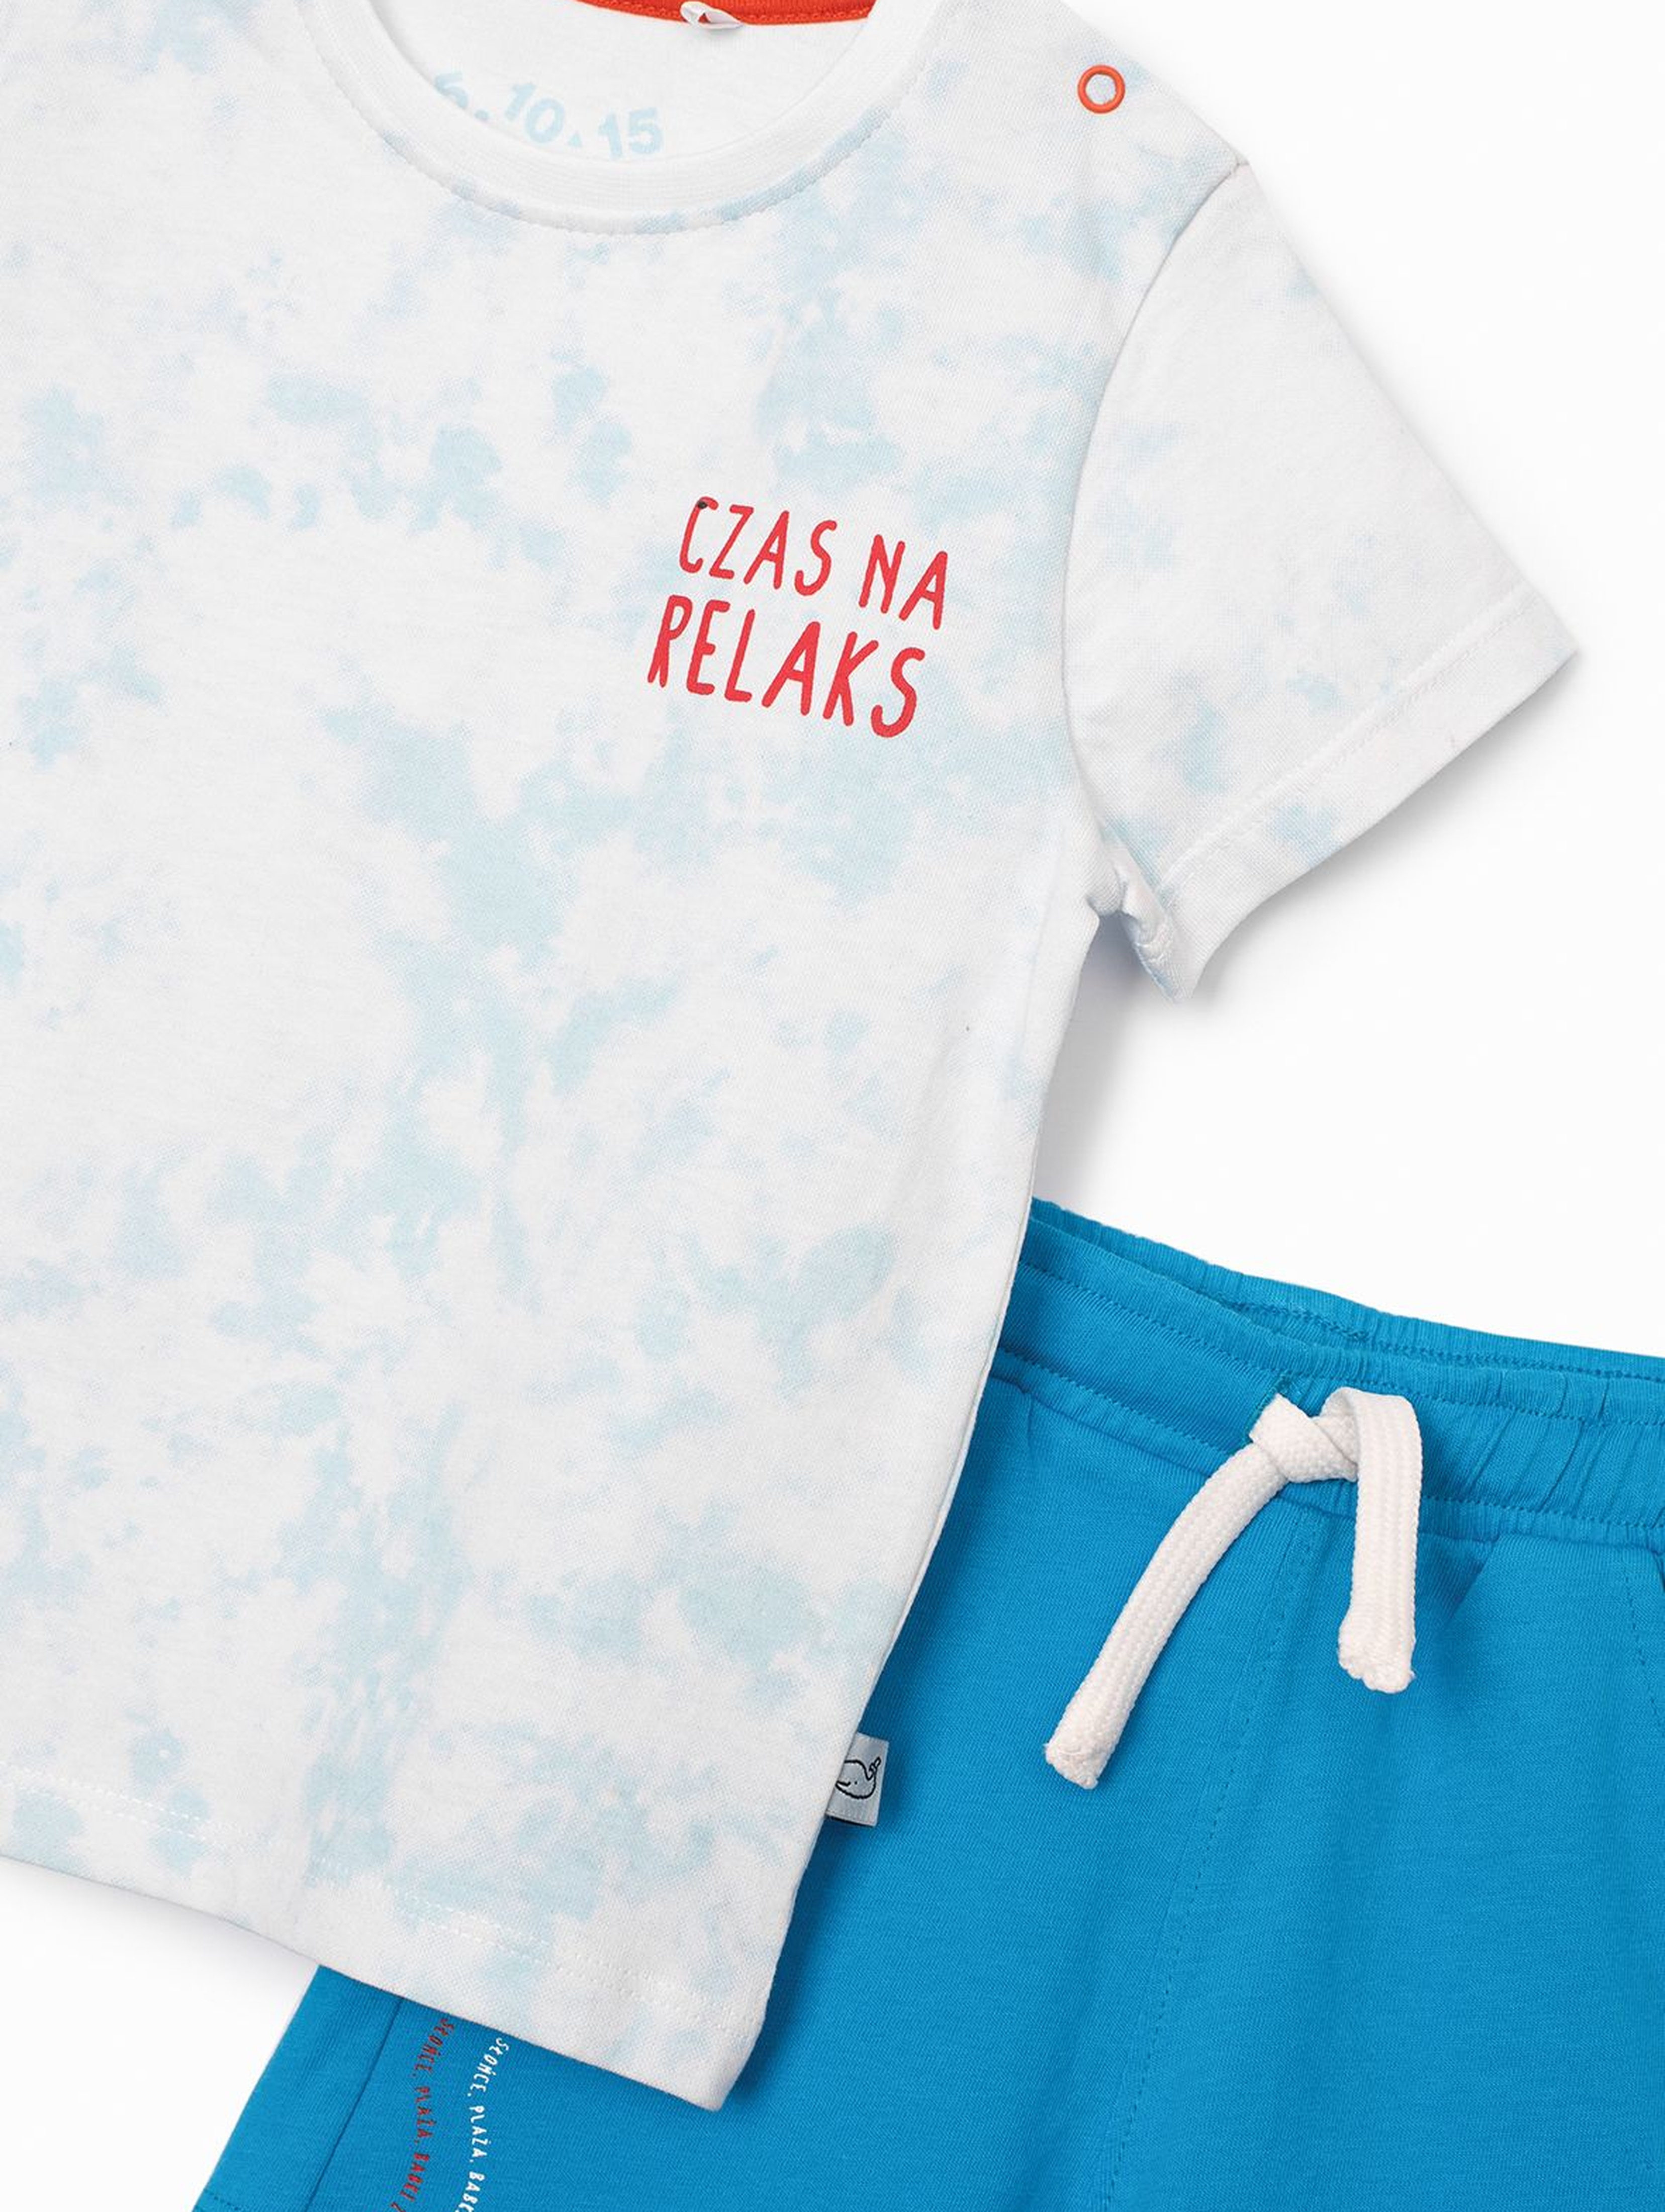 Komplet niemowlęcy- T-shirt i dzianinowe szorty - Czas na relaks